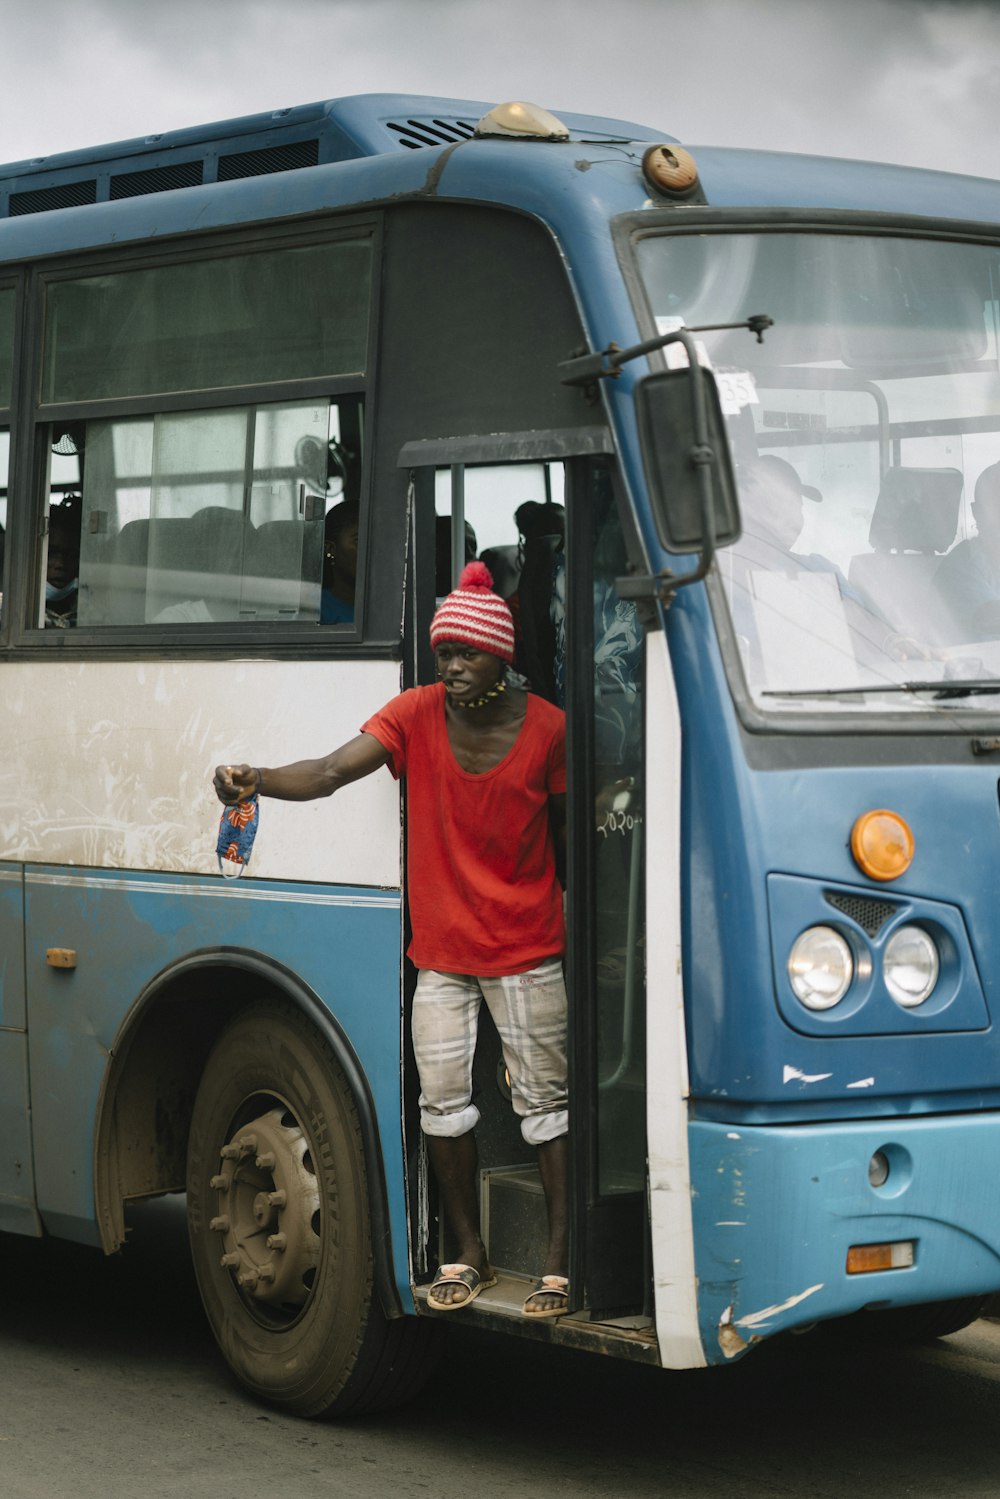 빨간 티셔츠와 흰 바지를 입은 남자가 낮에 파란 버스 앞에 서 있다